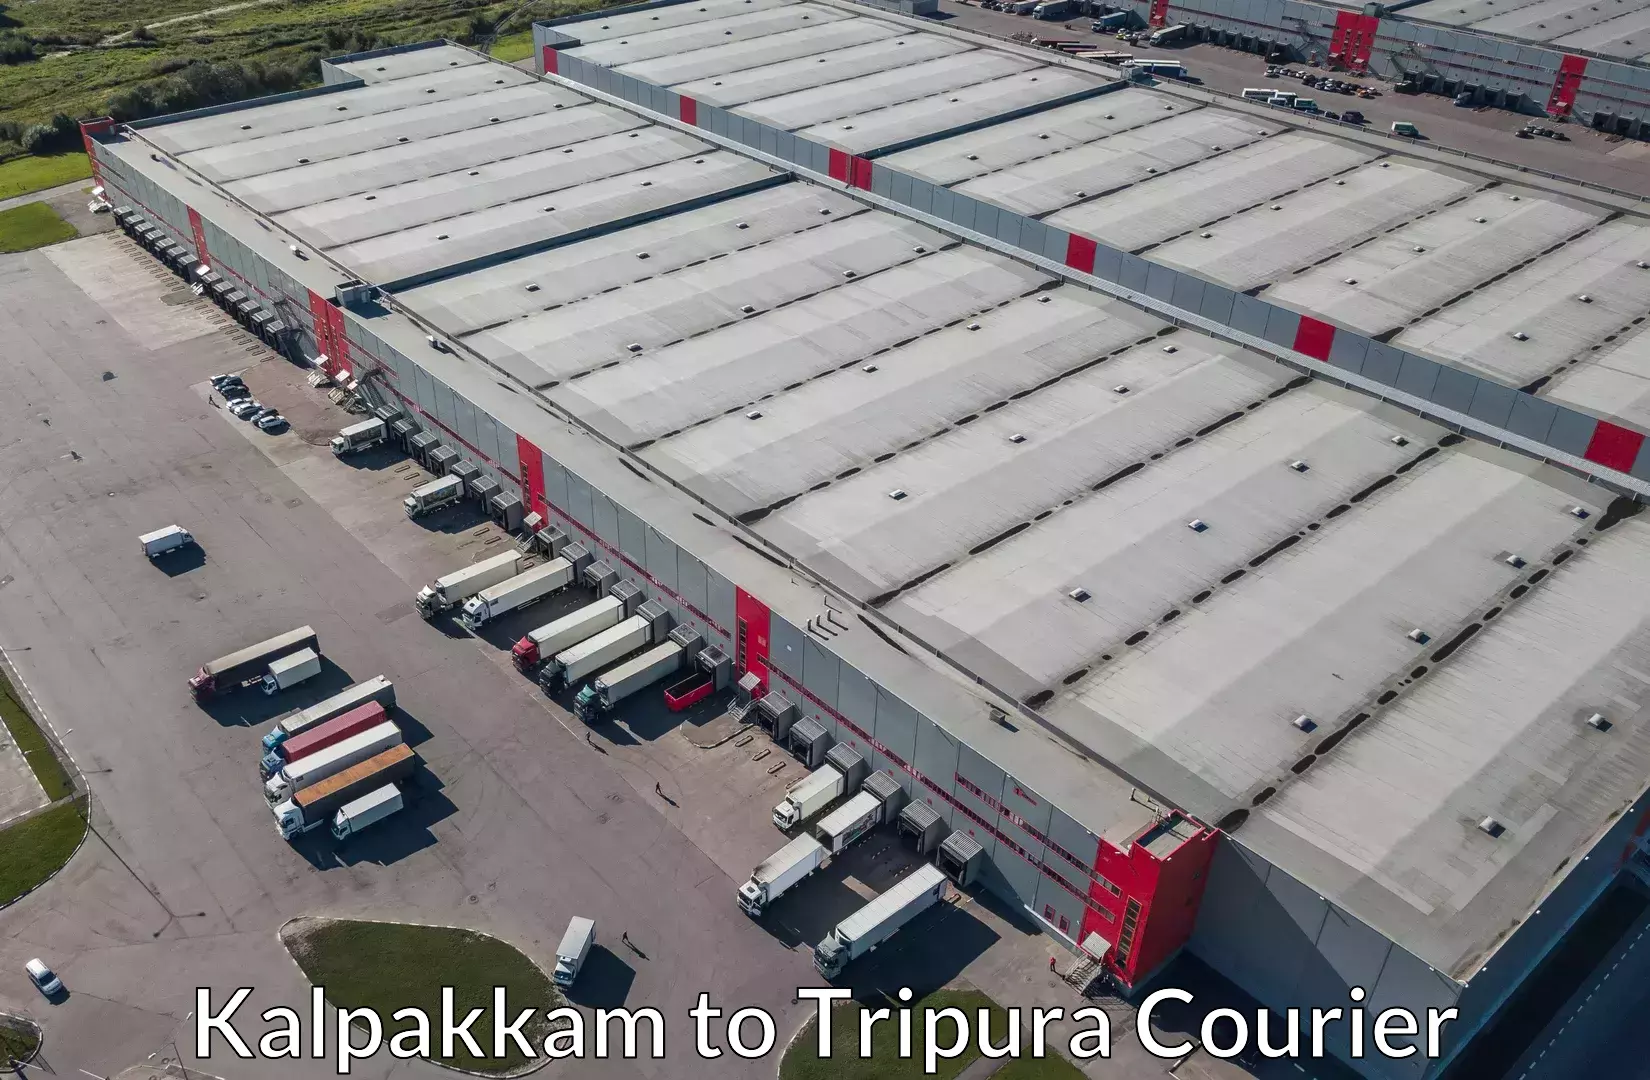 Luggage delivery optimization Kalpakkam to Tripura